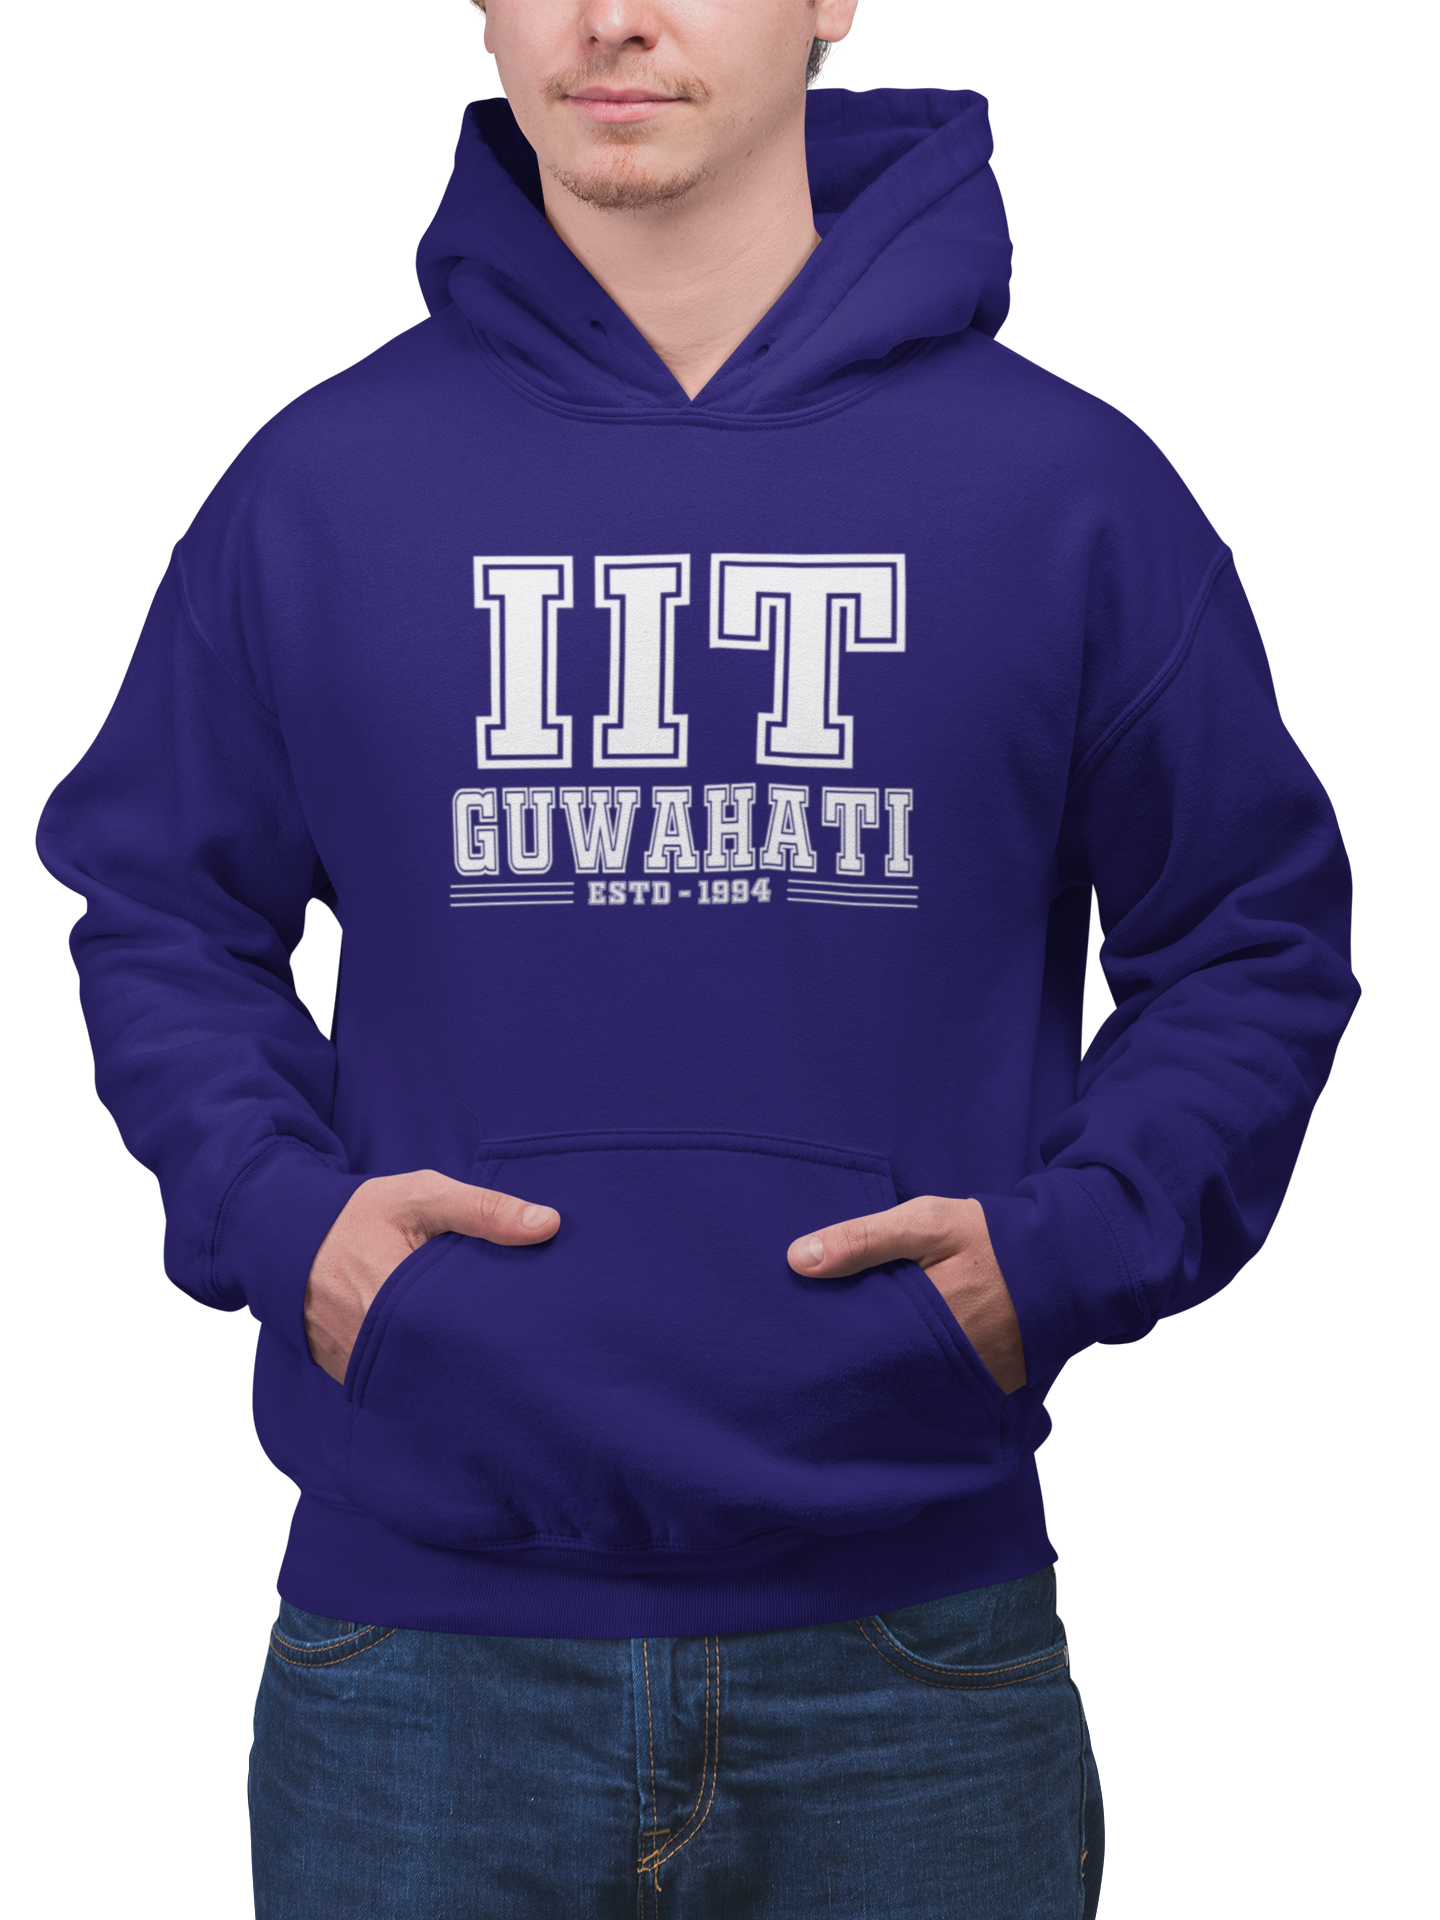 IIT Guwahati-teeshood.com